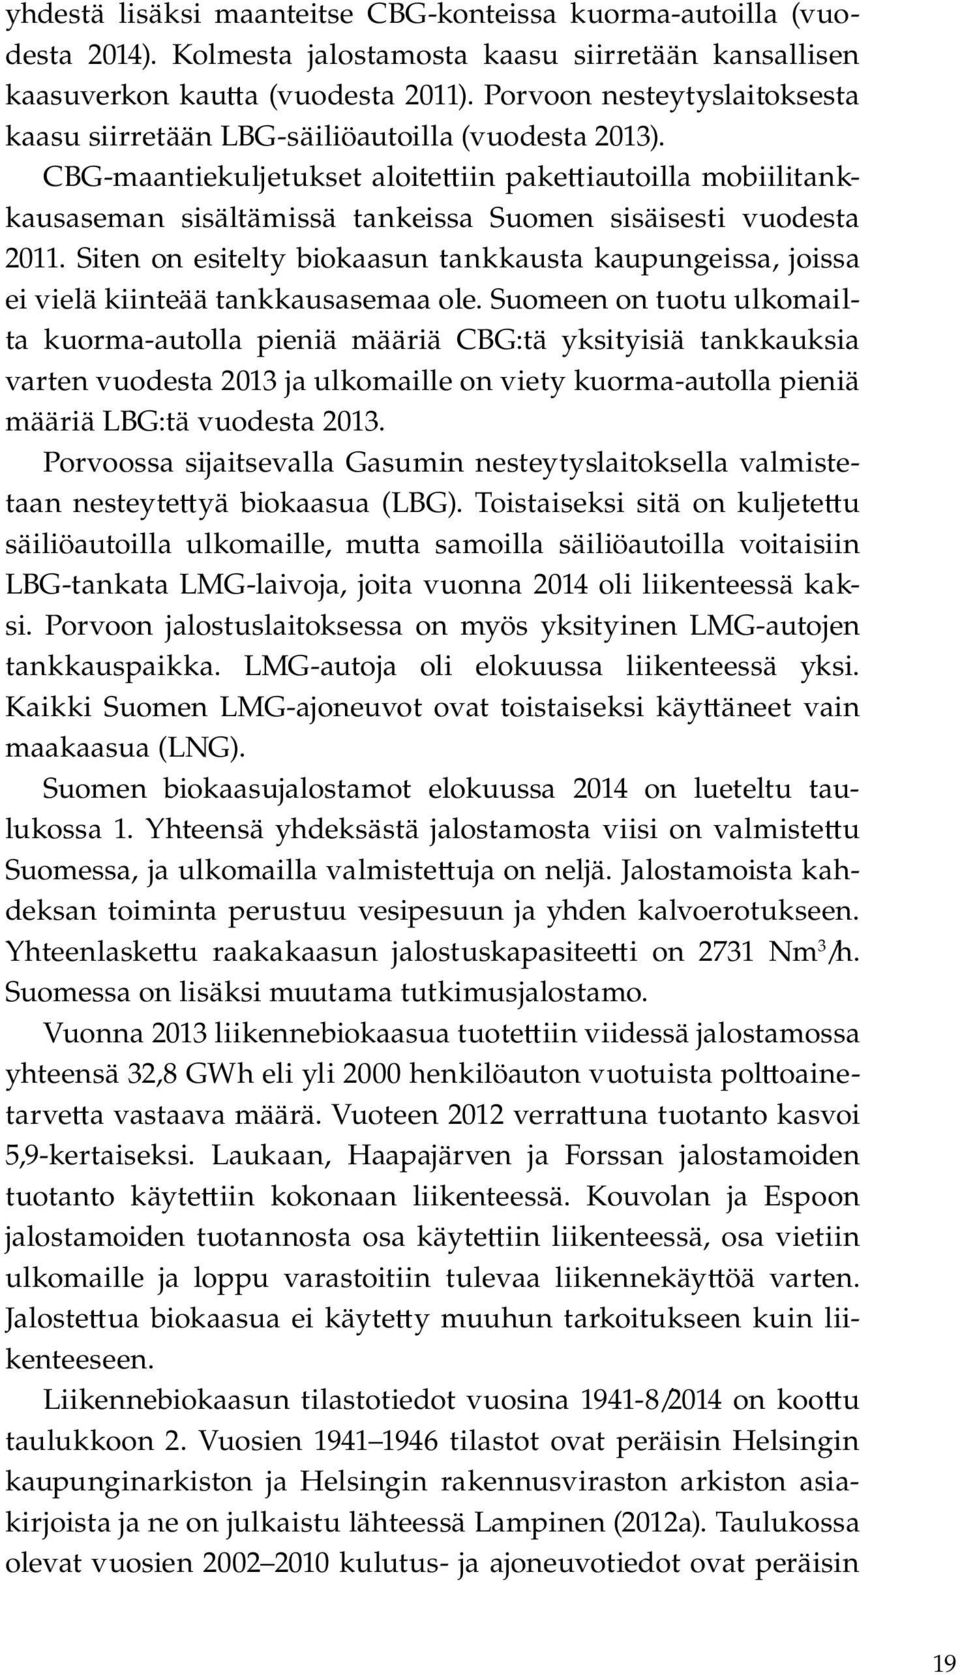 CBG-maantiekuljetukset aloite iin pake iautoilla mobiilitankkausaseman sisältämissä tankeissa Suomen sisäisesti vuodesta 2011.